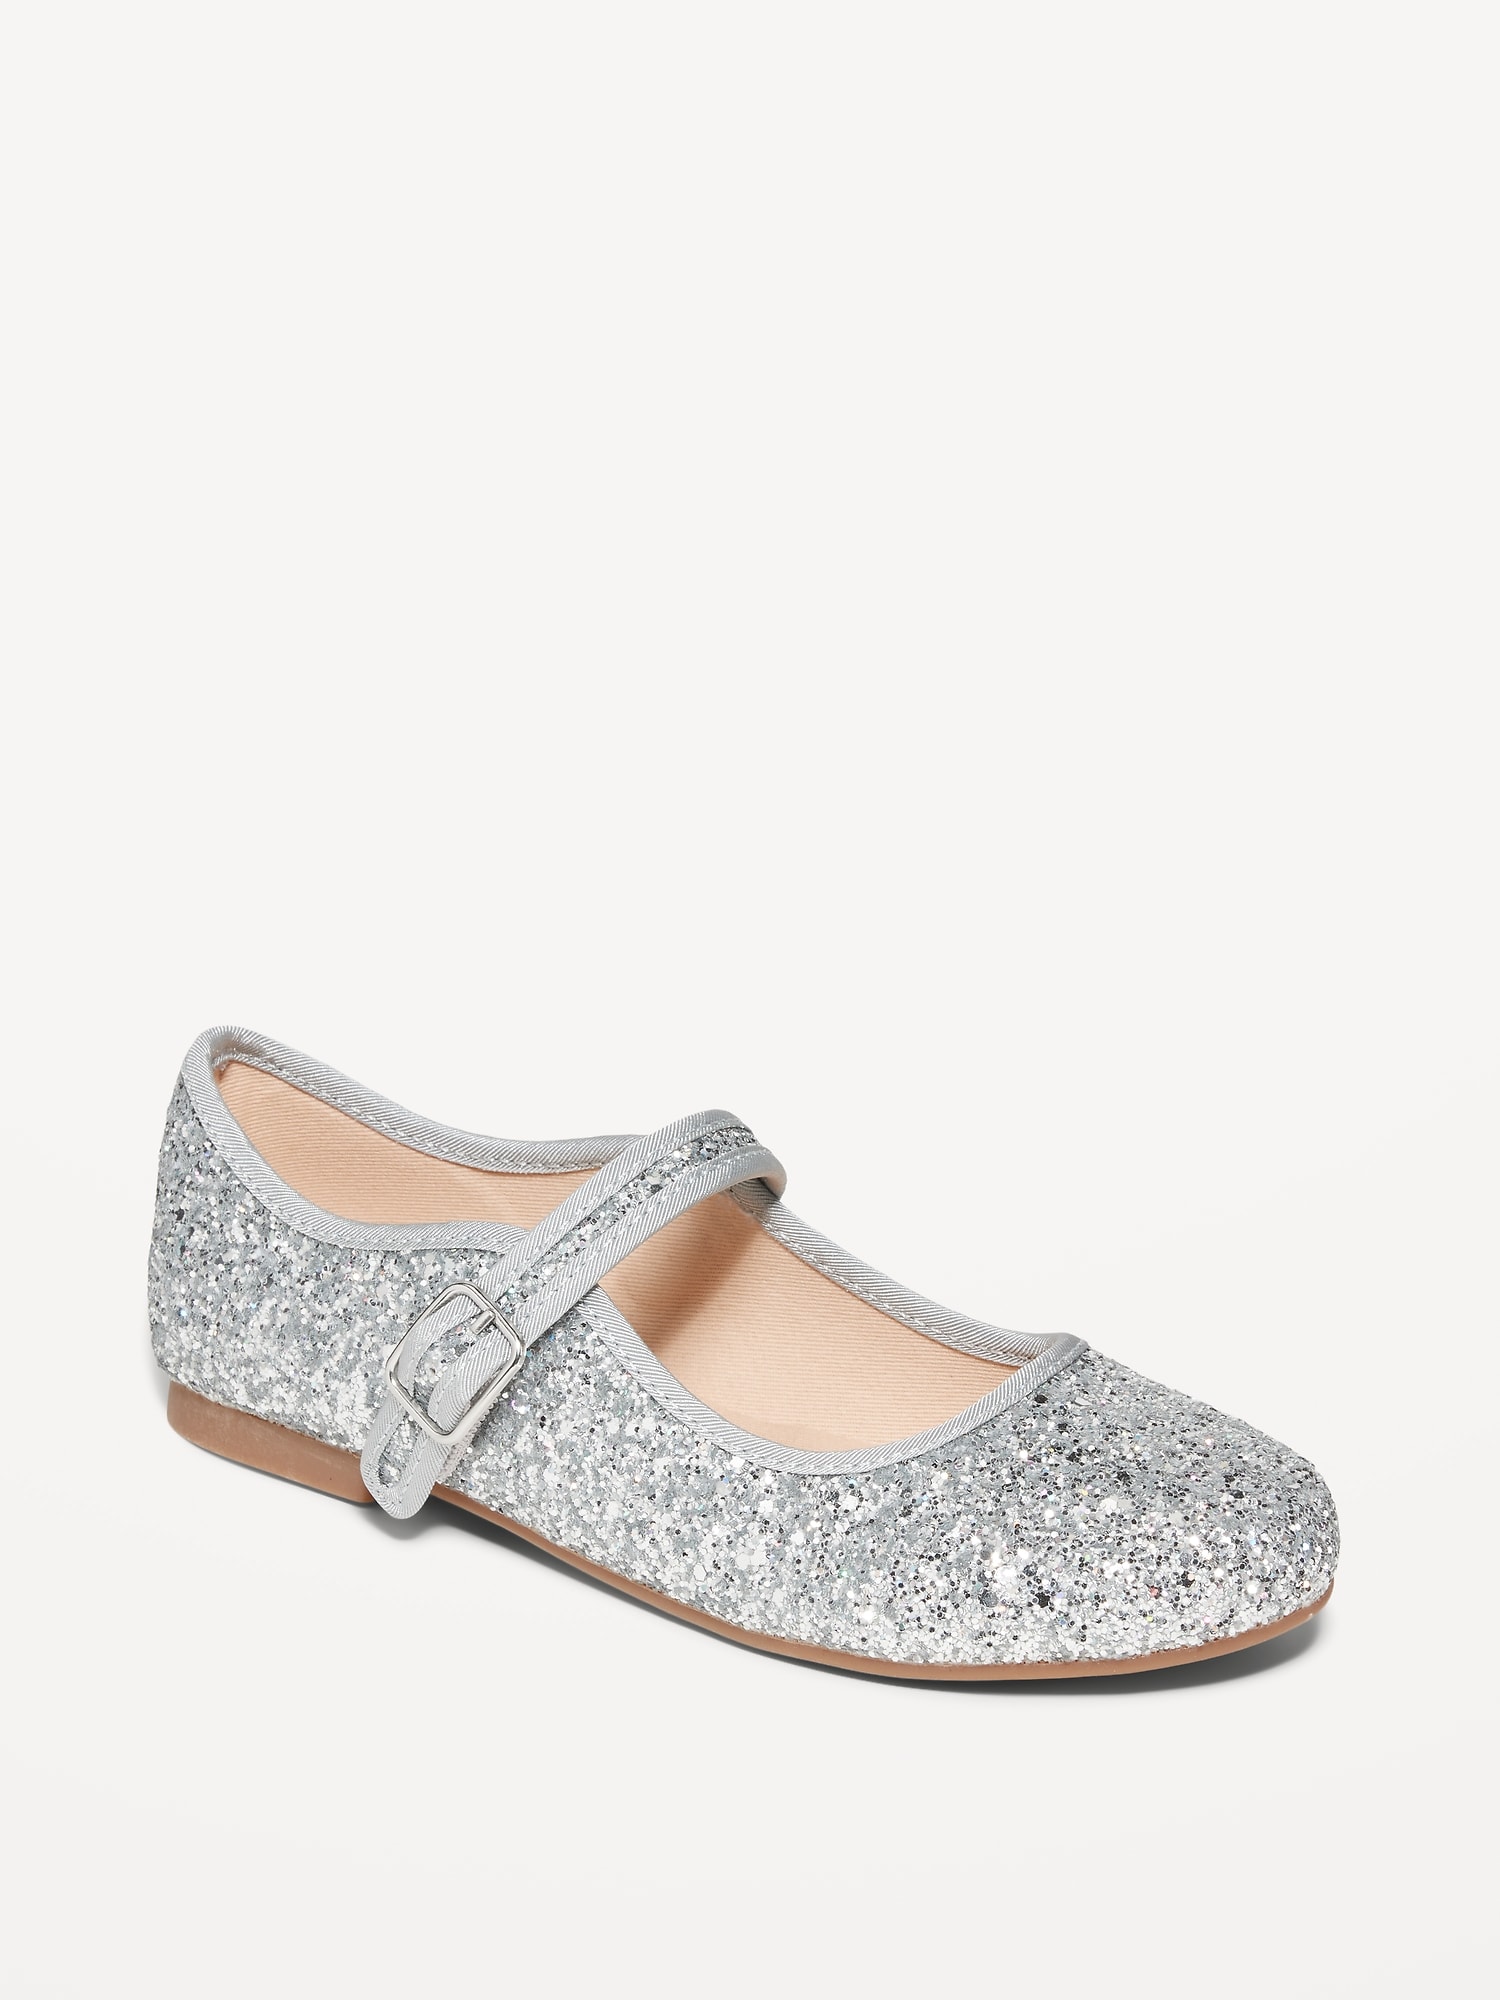 Oldnavy Glitter Ballet Flat Shoes for Girls